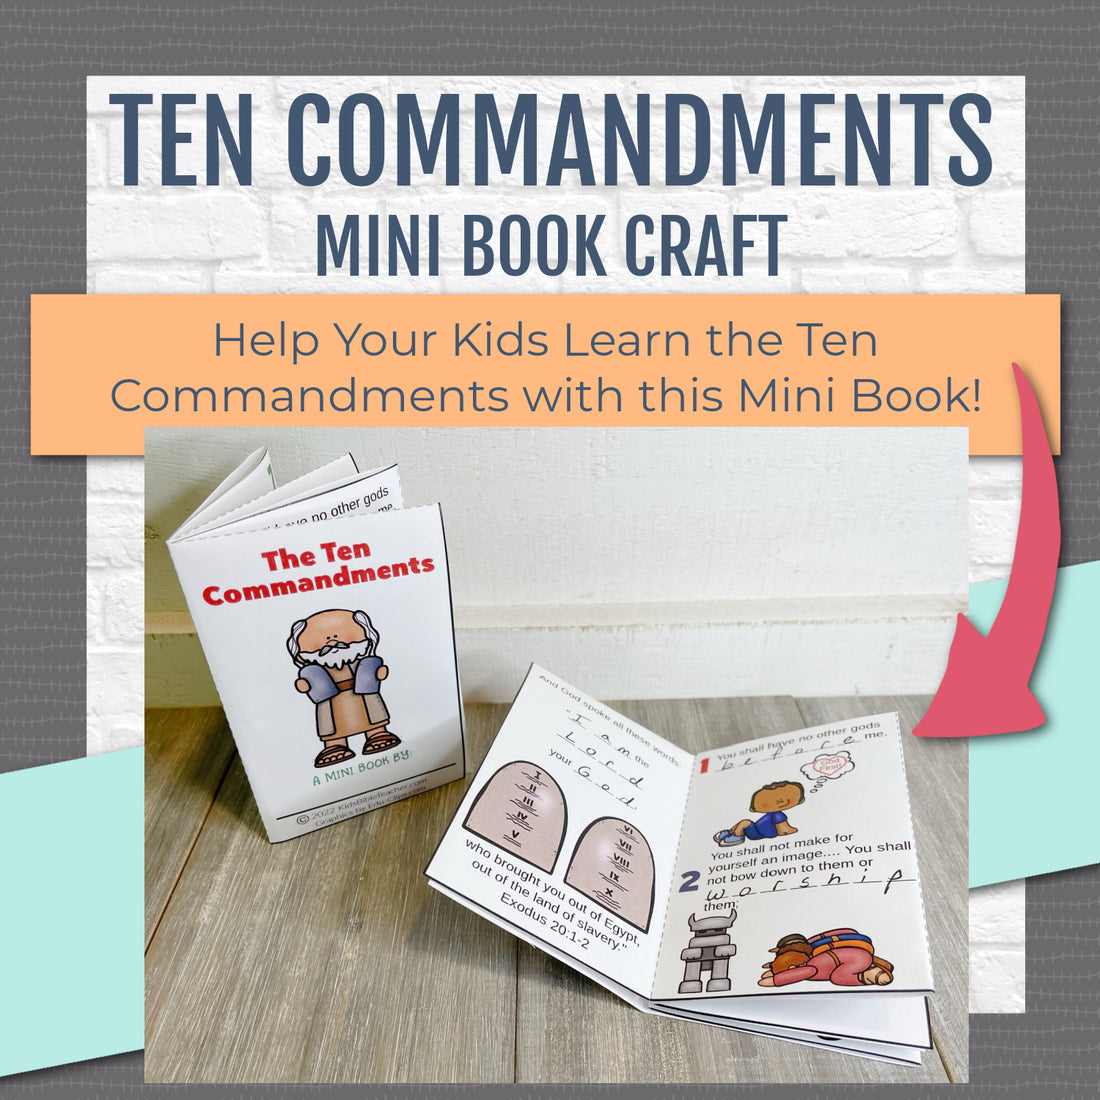 Ten Commandments Mini Book Craft Activity